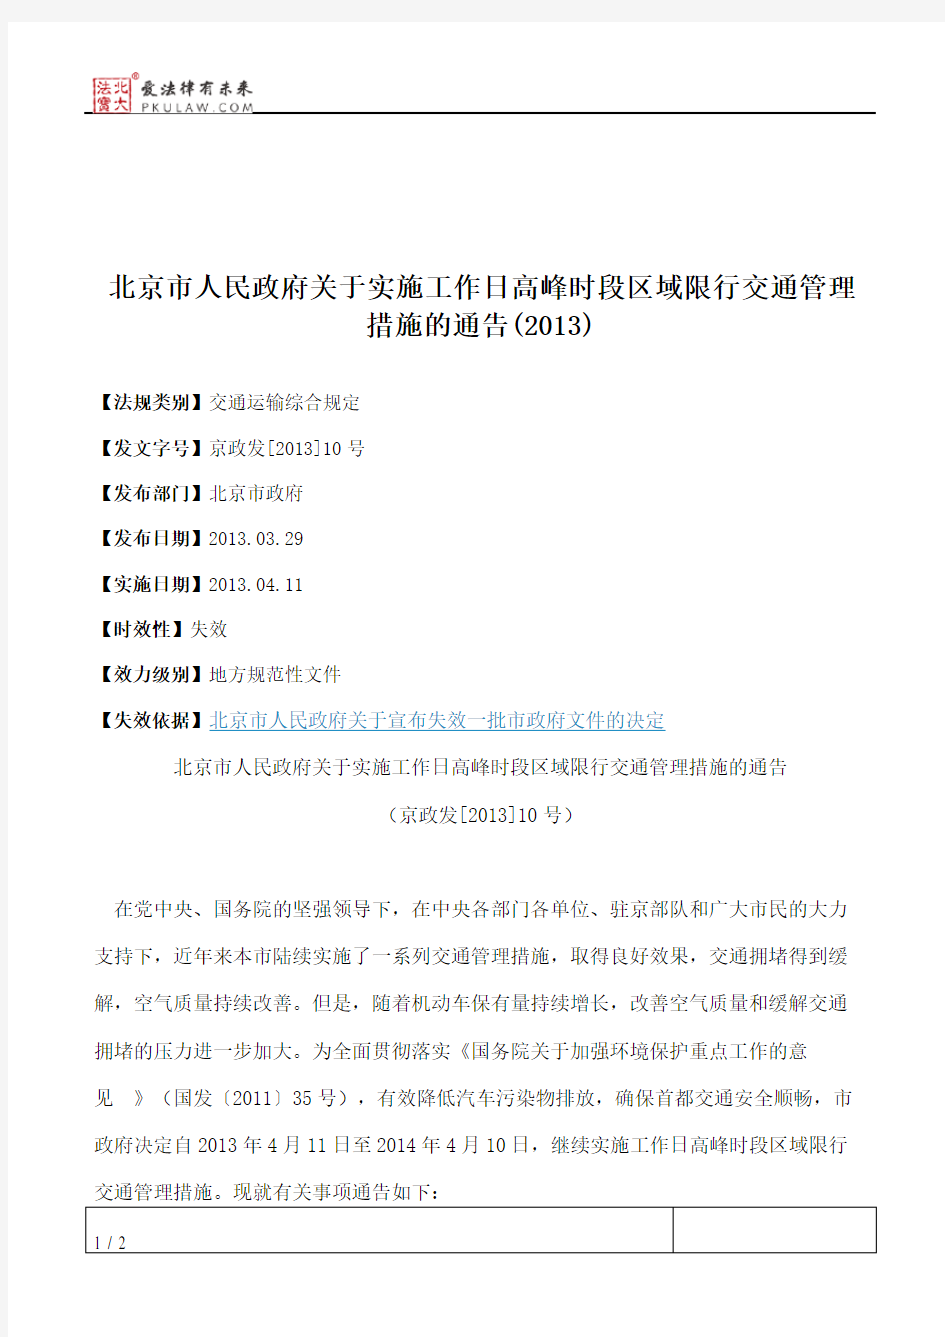 北京市人民政府关于实施工作日高峰时段区域限行交通管理措施的通告(2013)